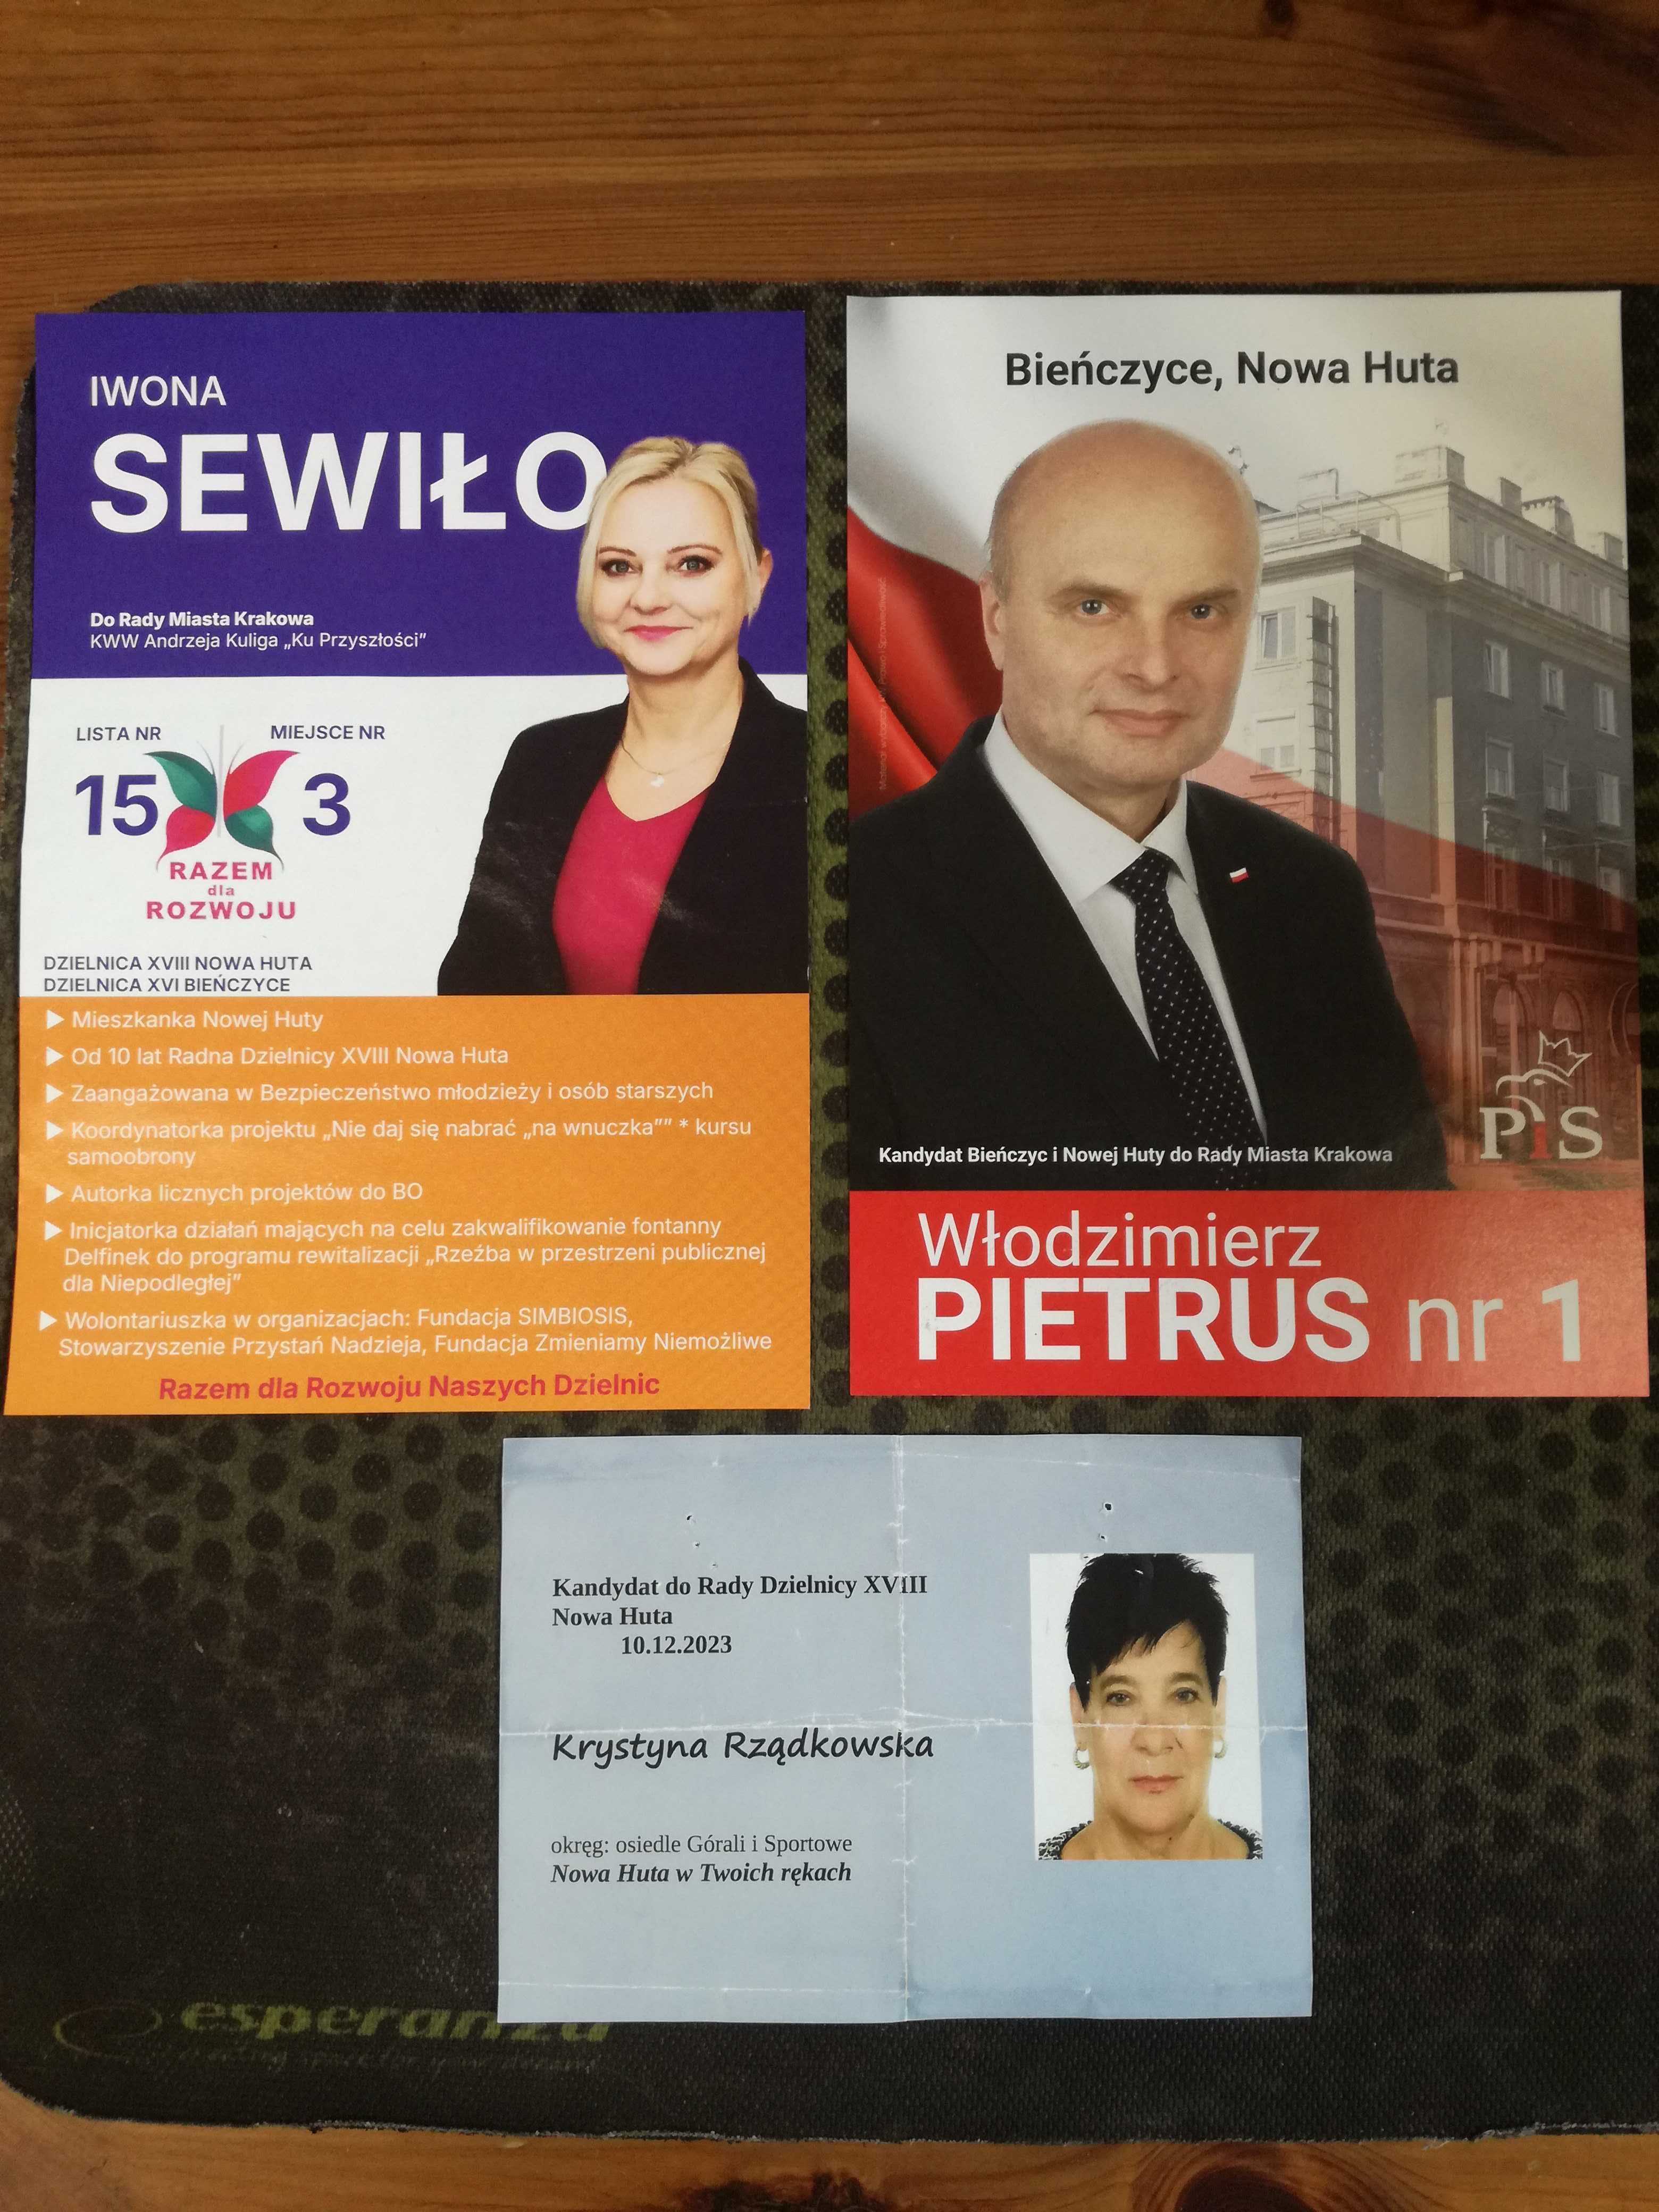 Wybory samorządowe w Krakowie materiały wyborcze, ulotki, gazeta